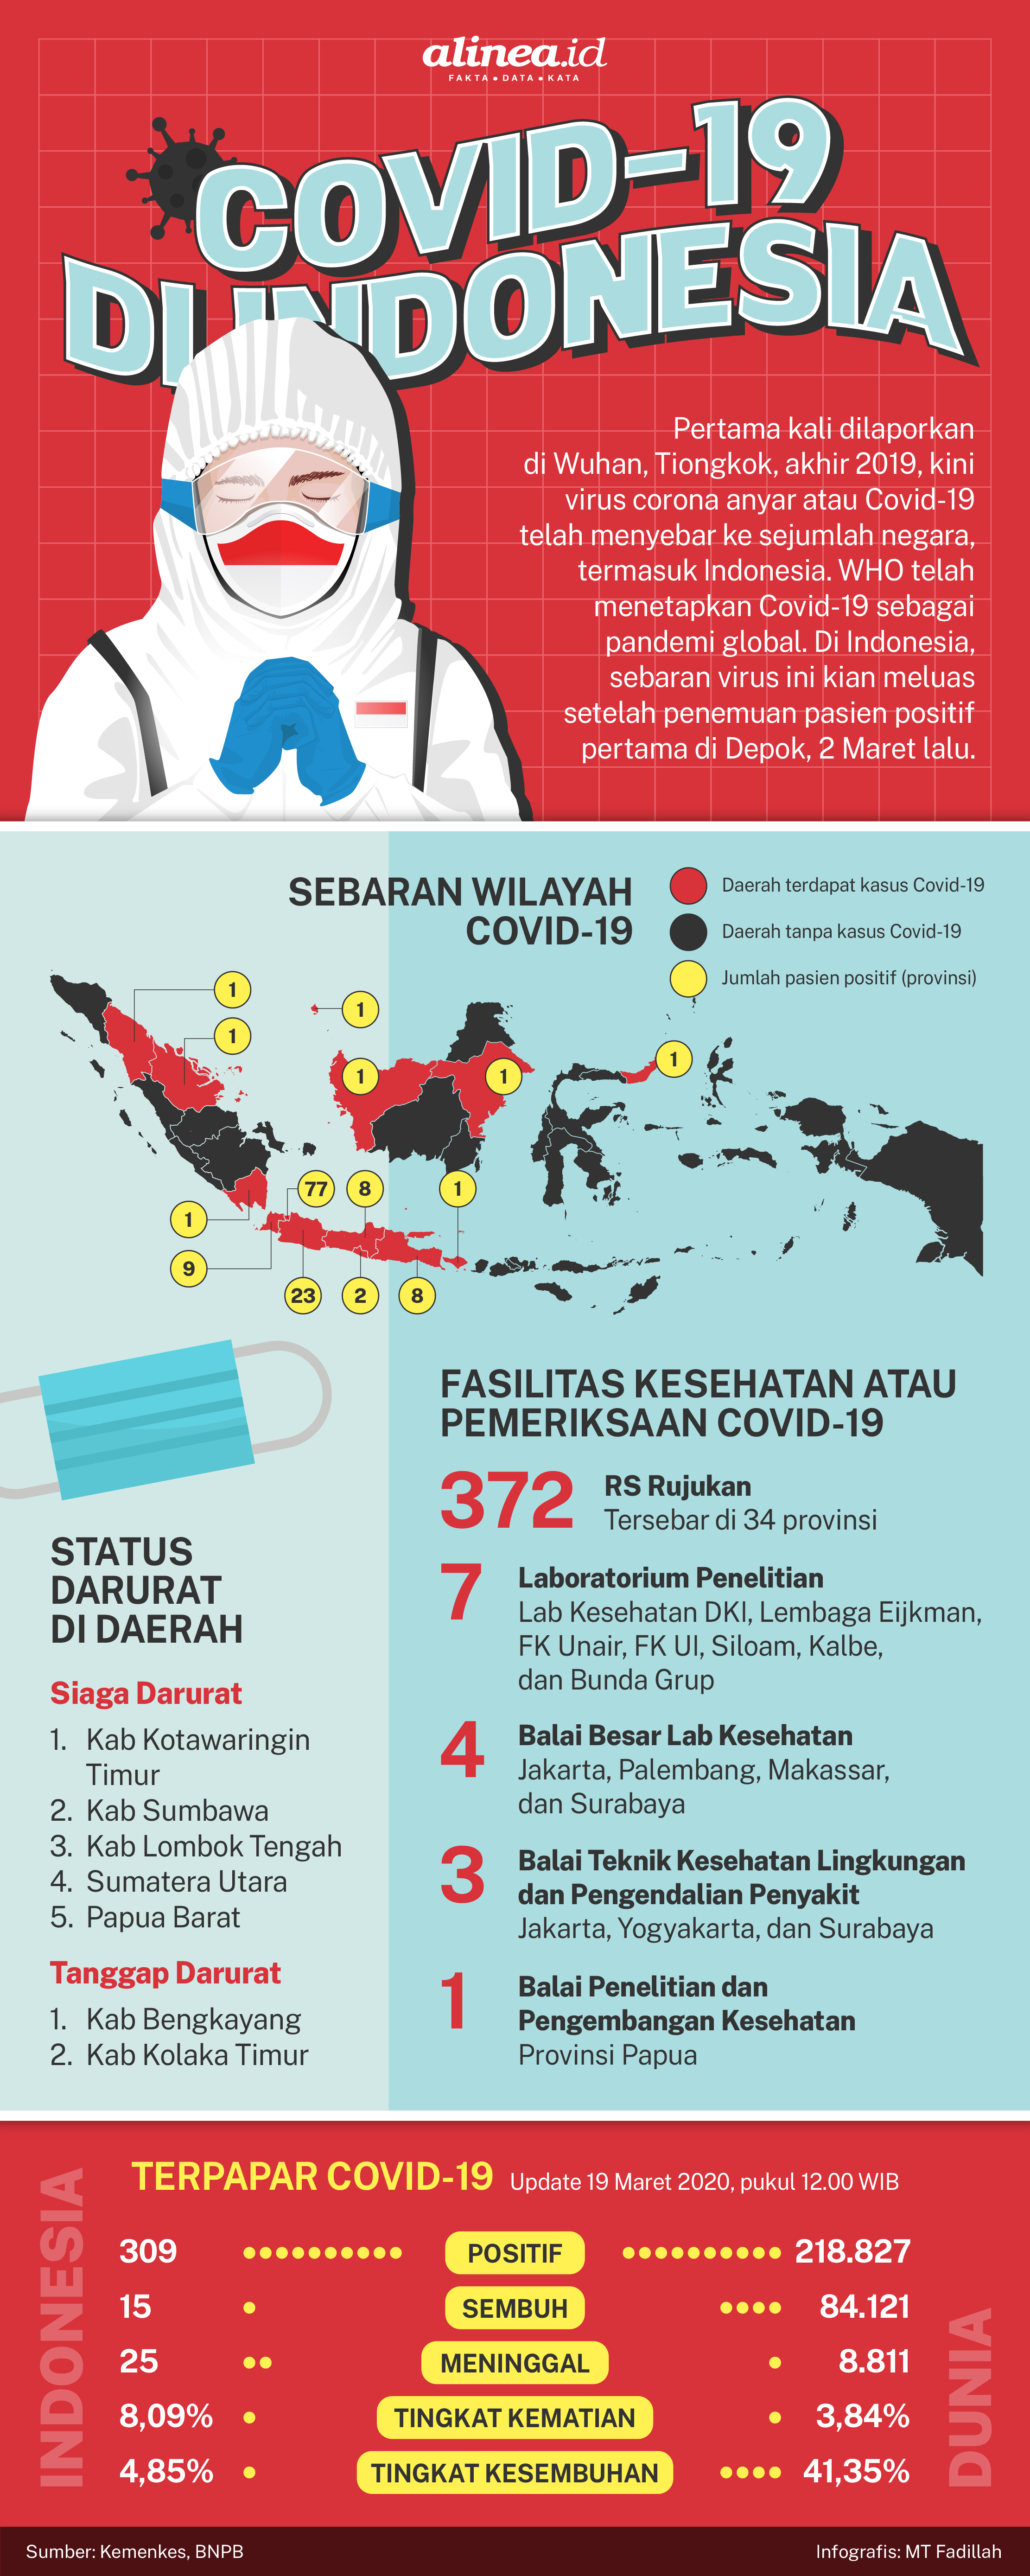 DKI Jakarta menjadi daerah dengan tingkat penderita coronavirus tertinggi.